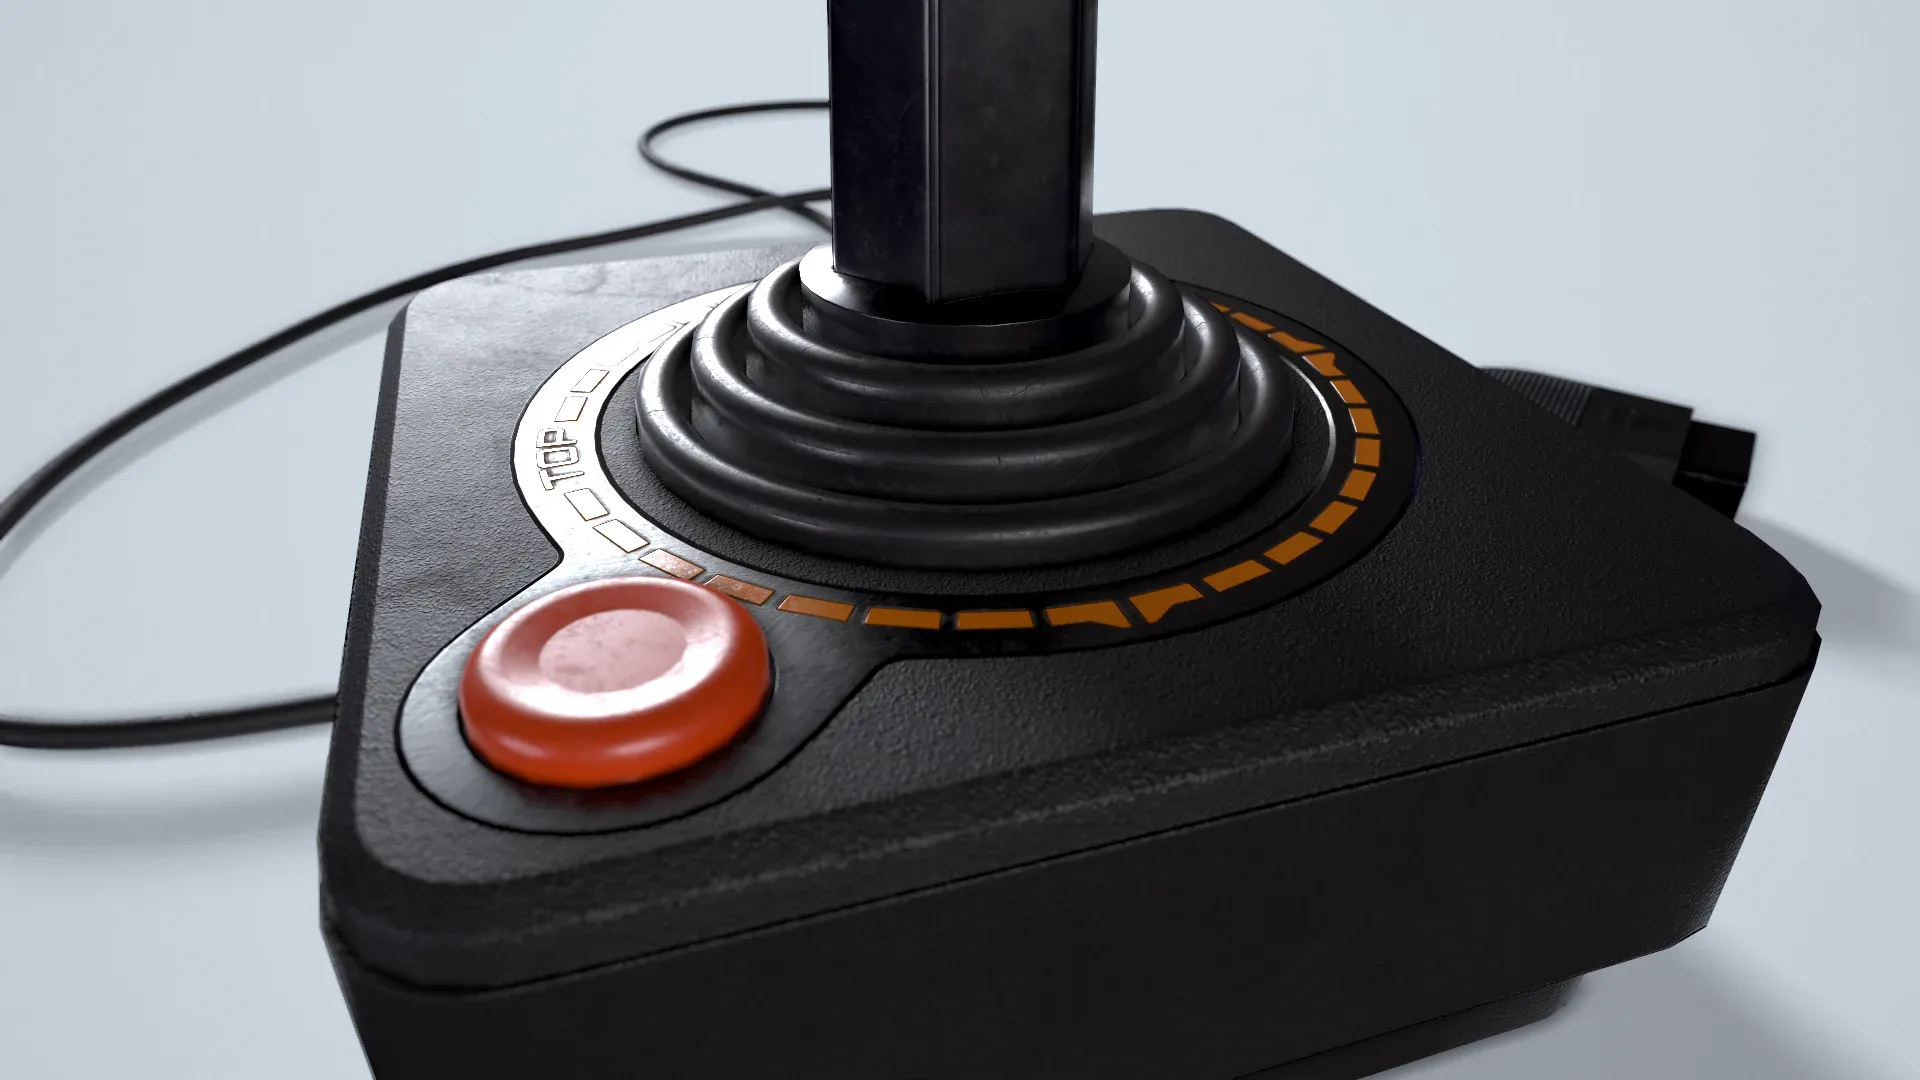 Atari CX40 Joystick Controller